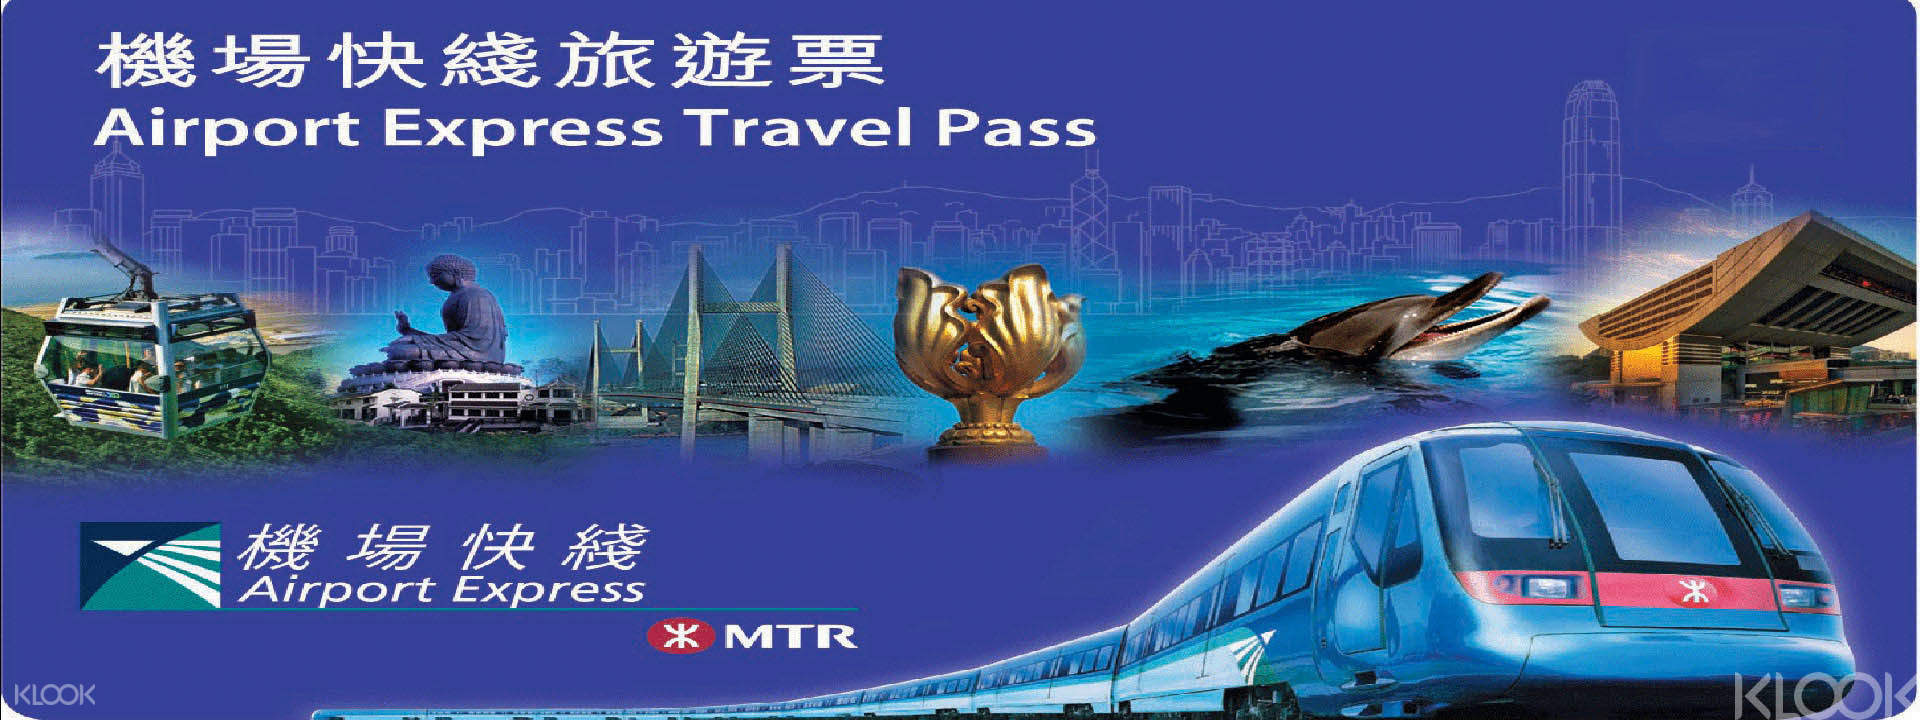 hong kong mtr tourist 3 day pass price